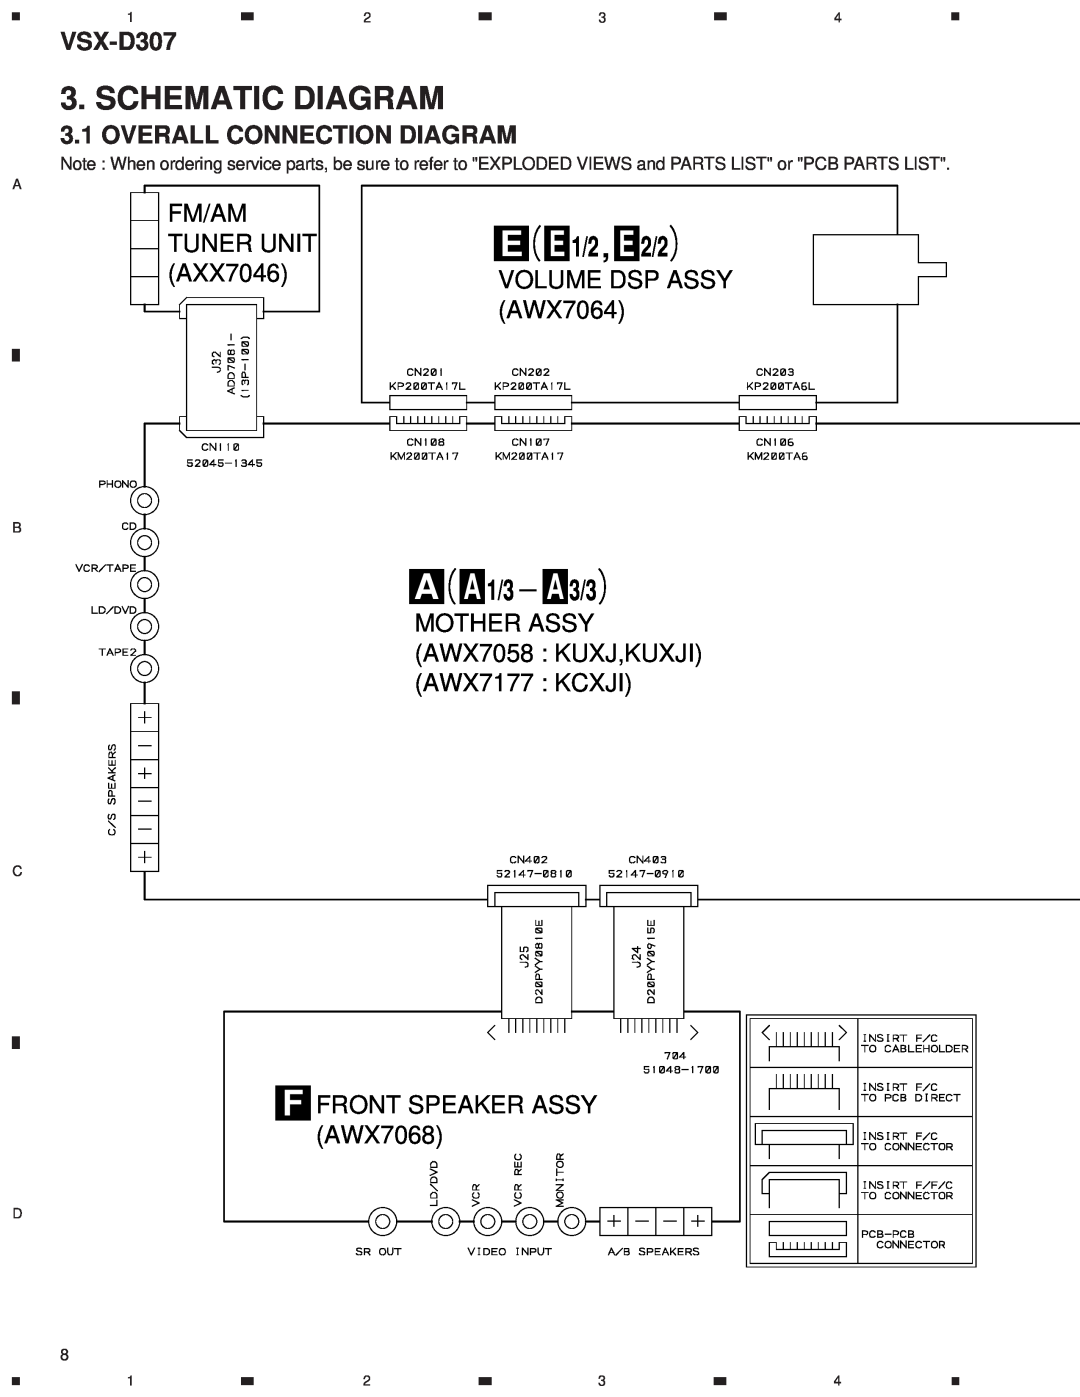 Dolby Laboratories STAV-3770 Schematic Diagram, E E 1/2 , E 2/2, A A 1/3 A 3/3, Overall Connection Diagram, Fm/Am, AXX7046 